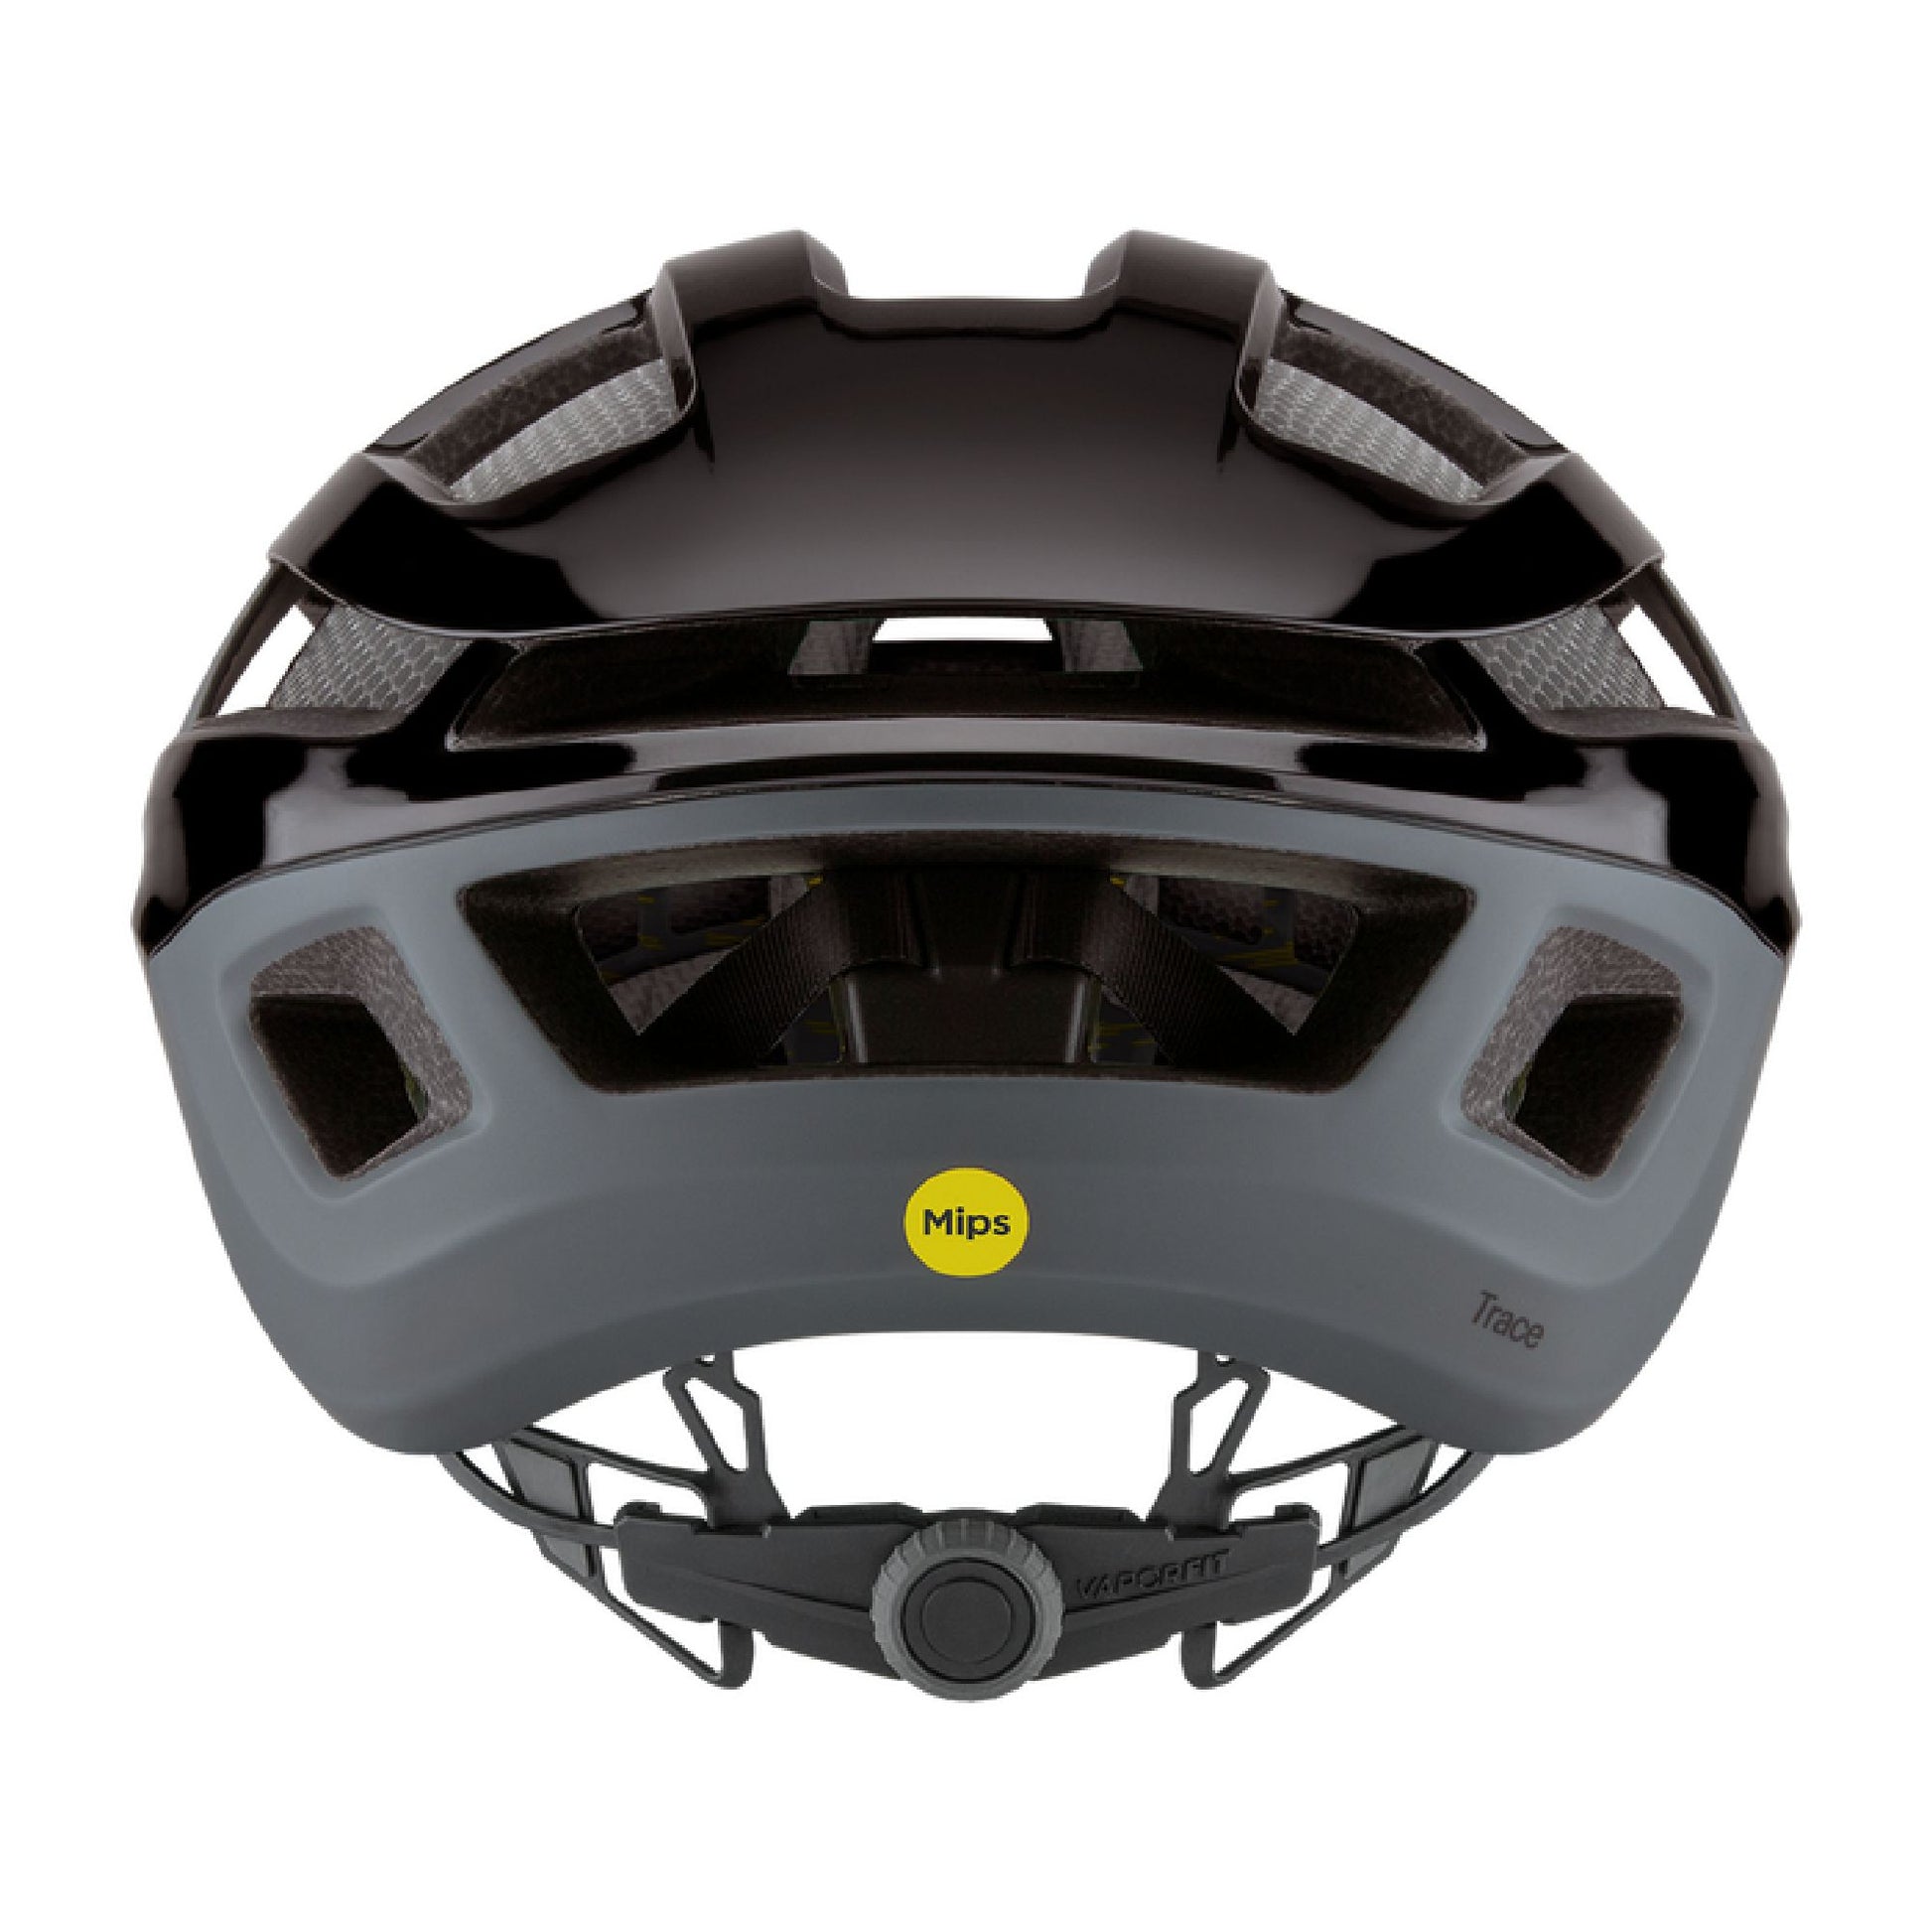 Smith Trace MIPS Helmet Black / Matte Cement Bike Helmets